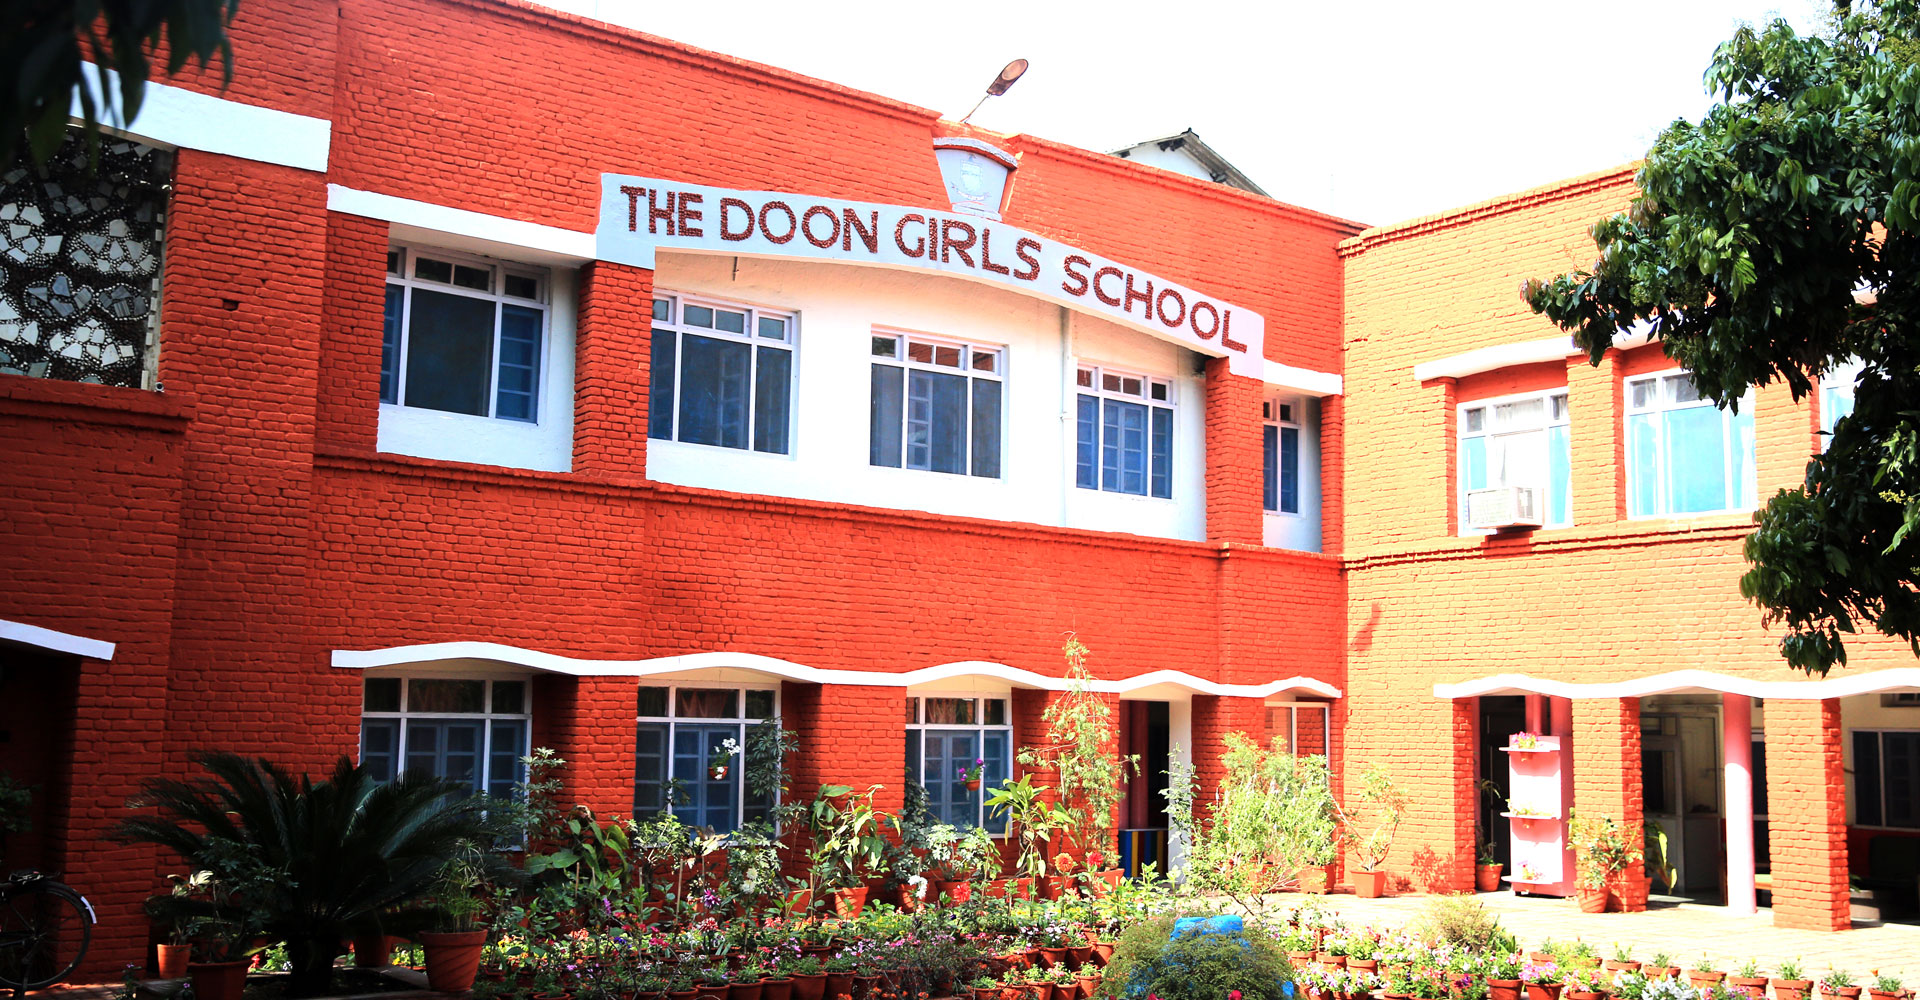 The Doon Girls' School